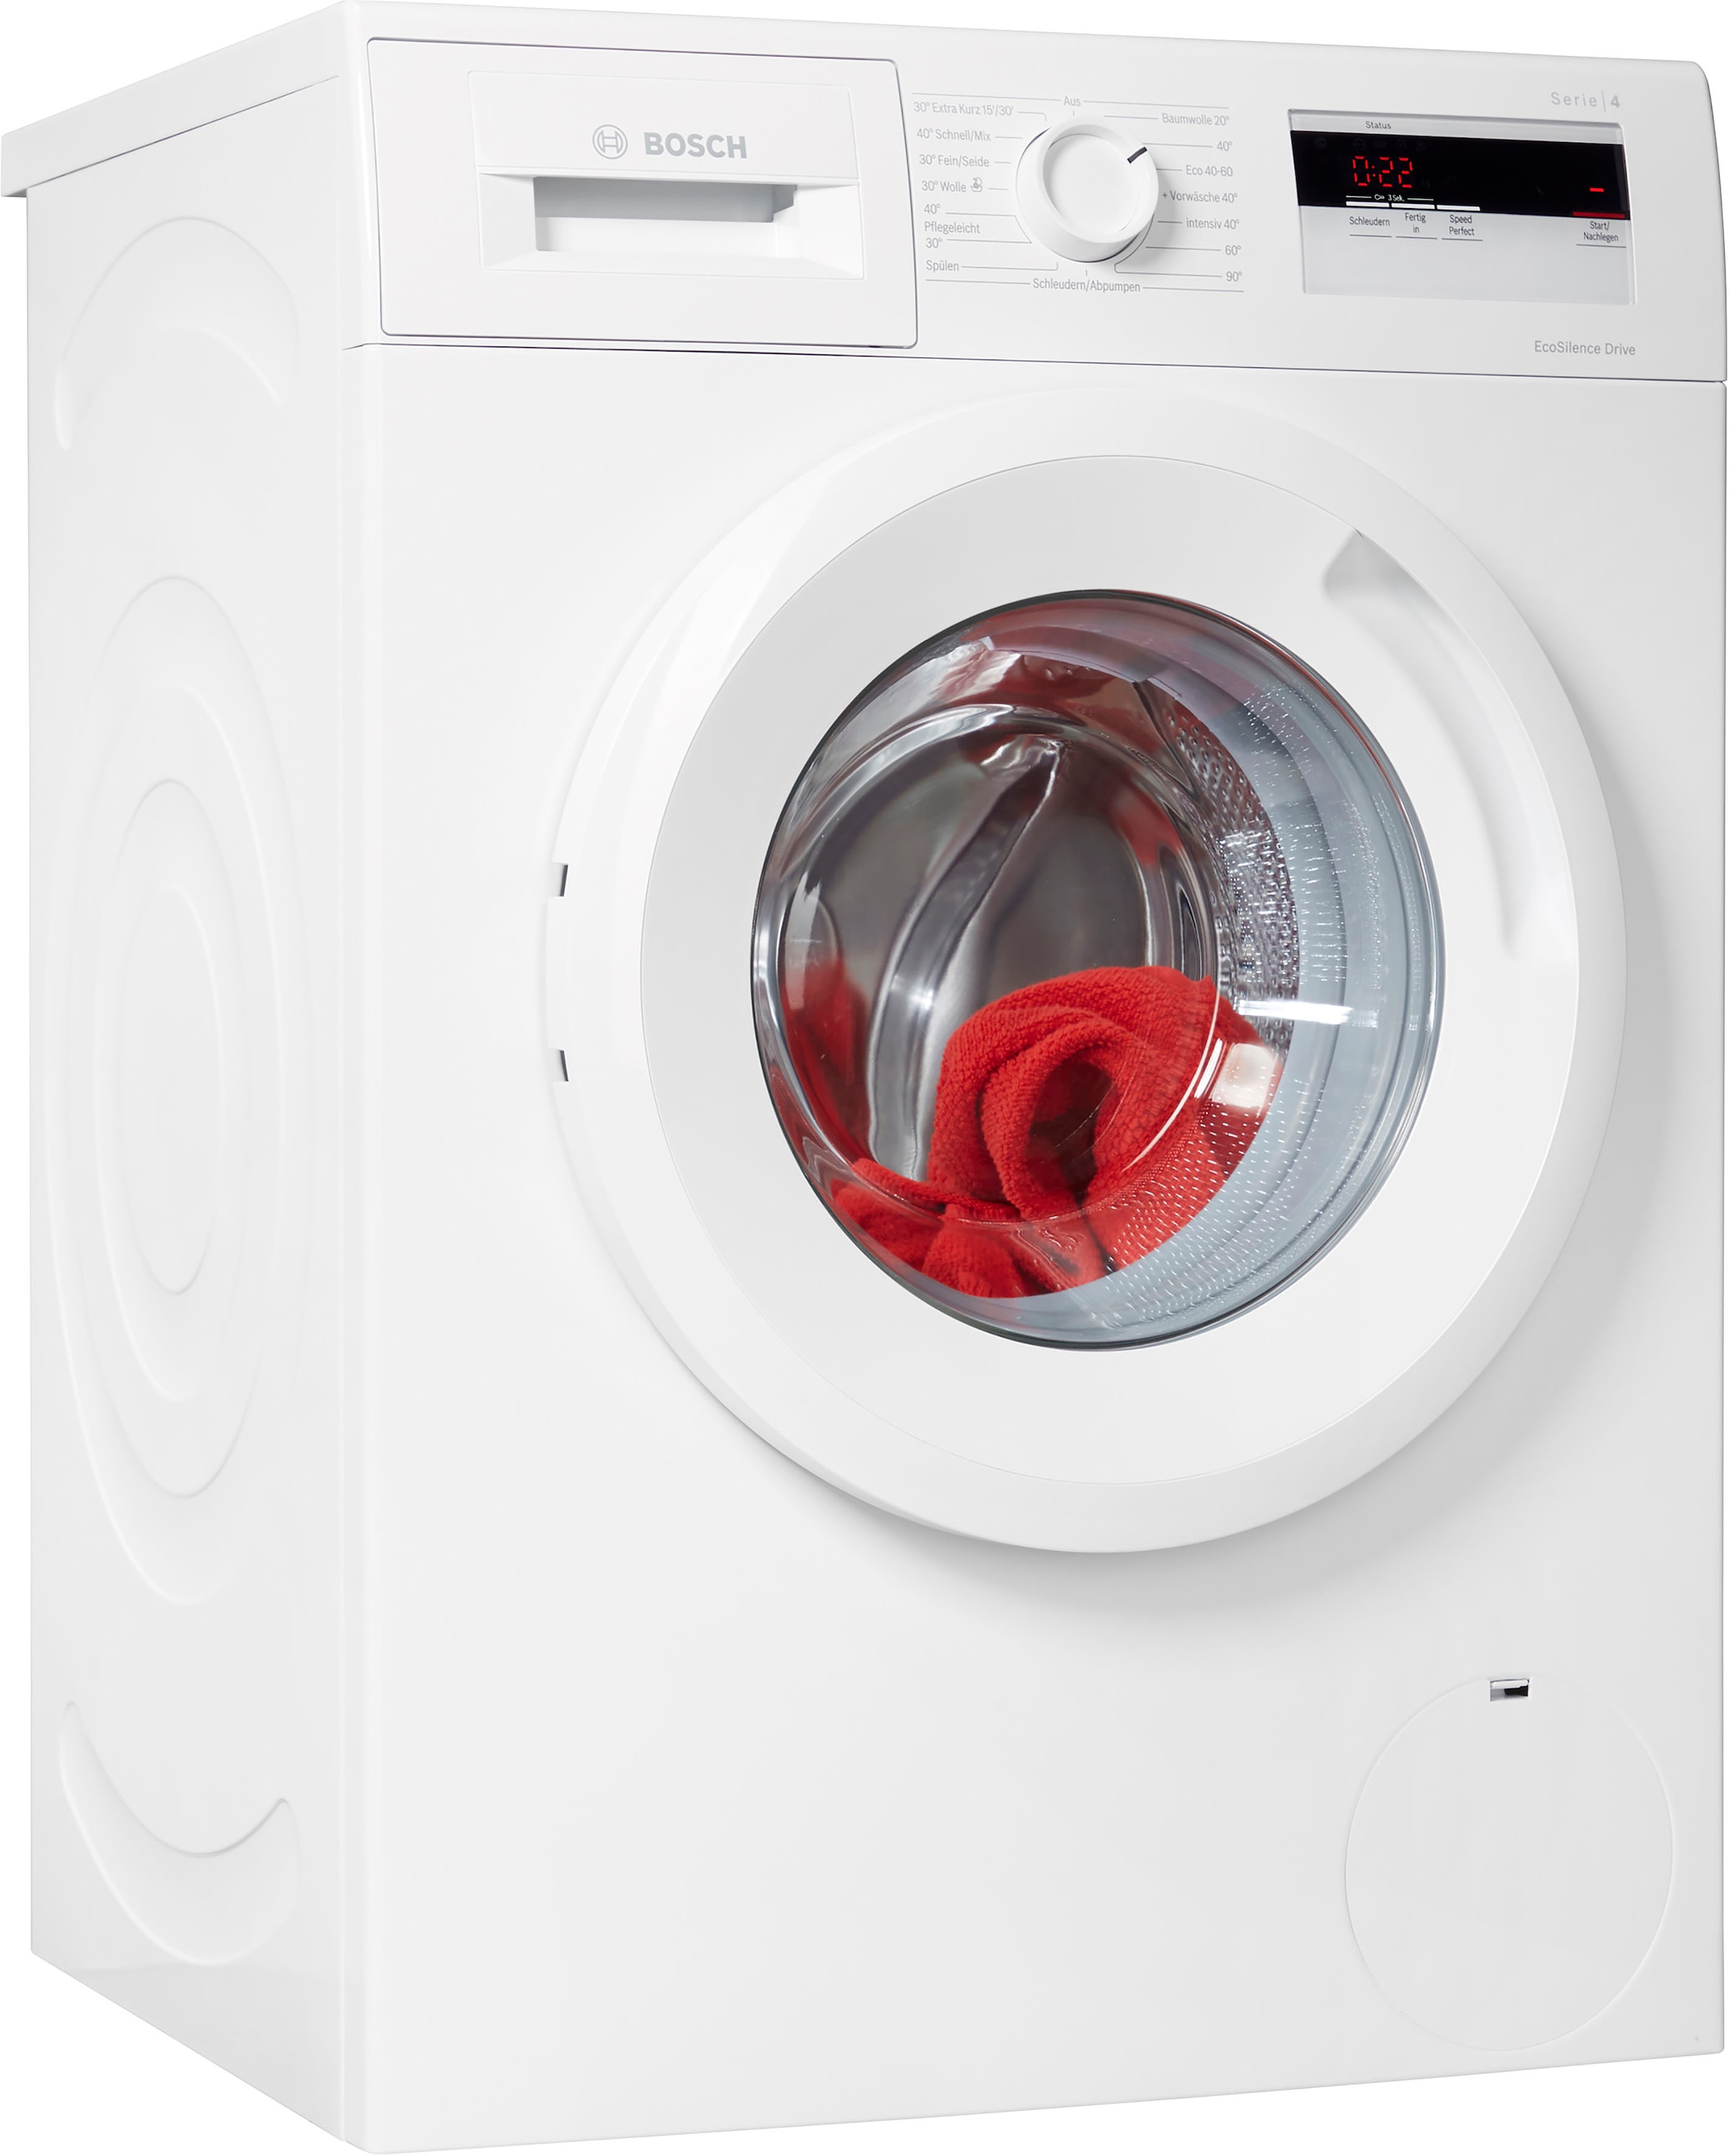 BOSCH Waschmaschine »WAN280A2«, 4, WAN280A2, 7 kg, 1400 U/min online kaufen